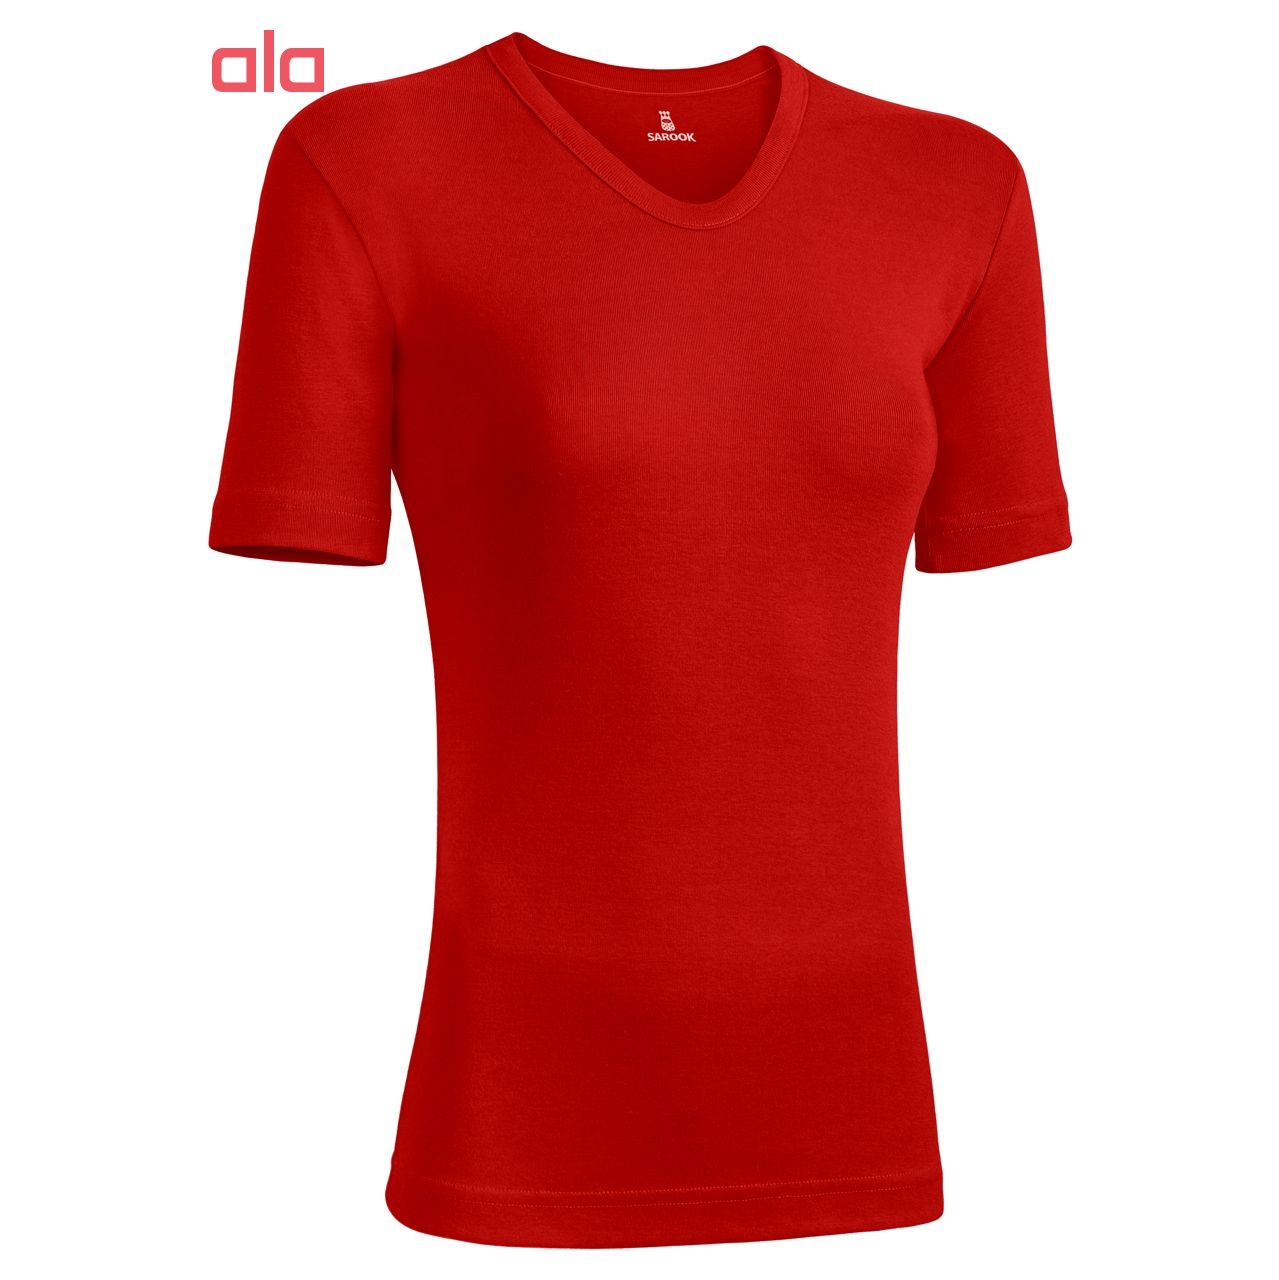 تی شرت زنانه ساروک مدل TZV15 رنگ قرمز